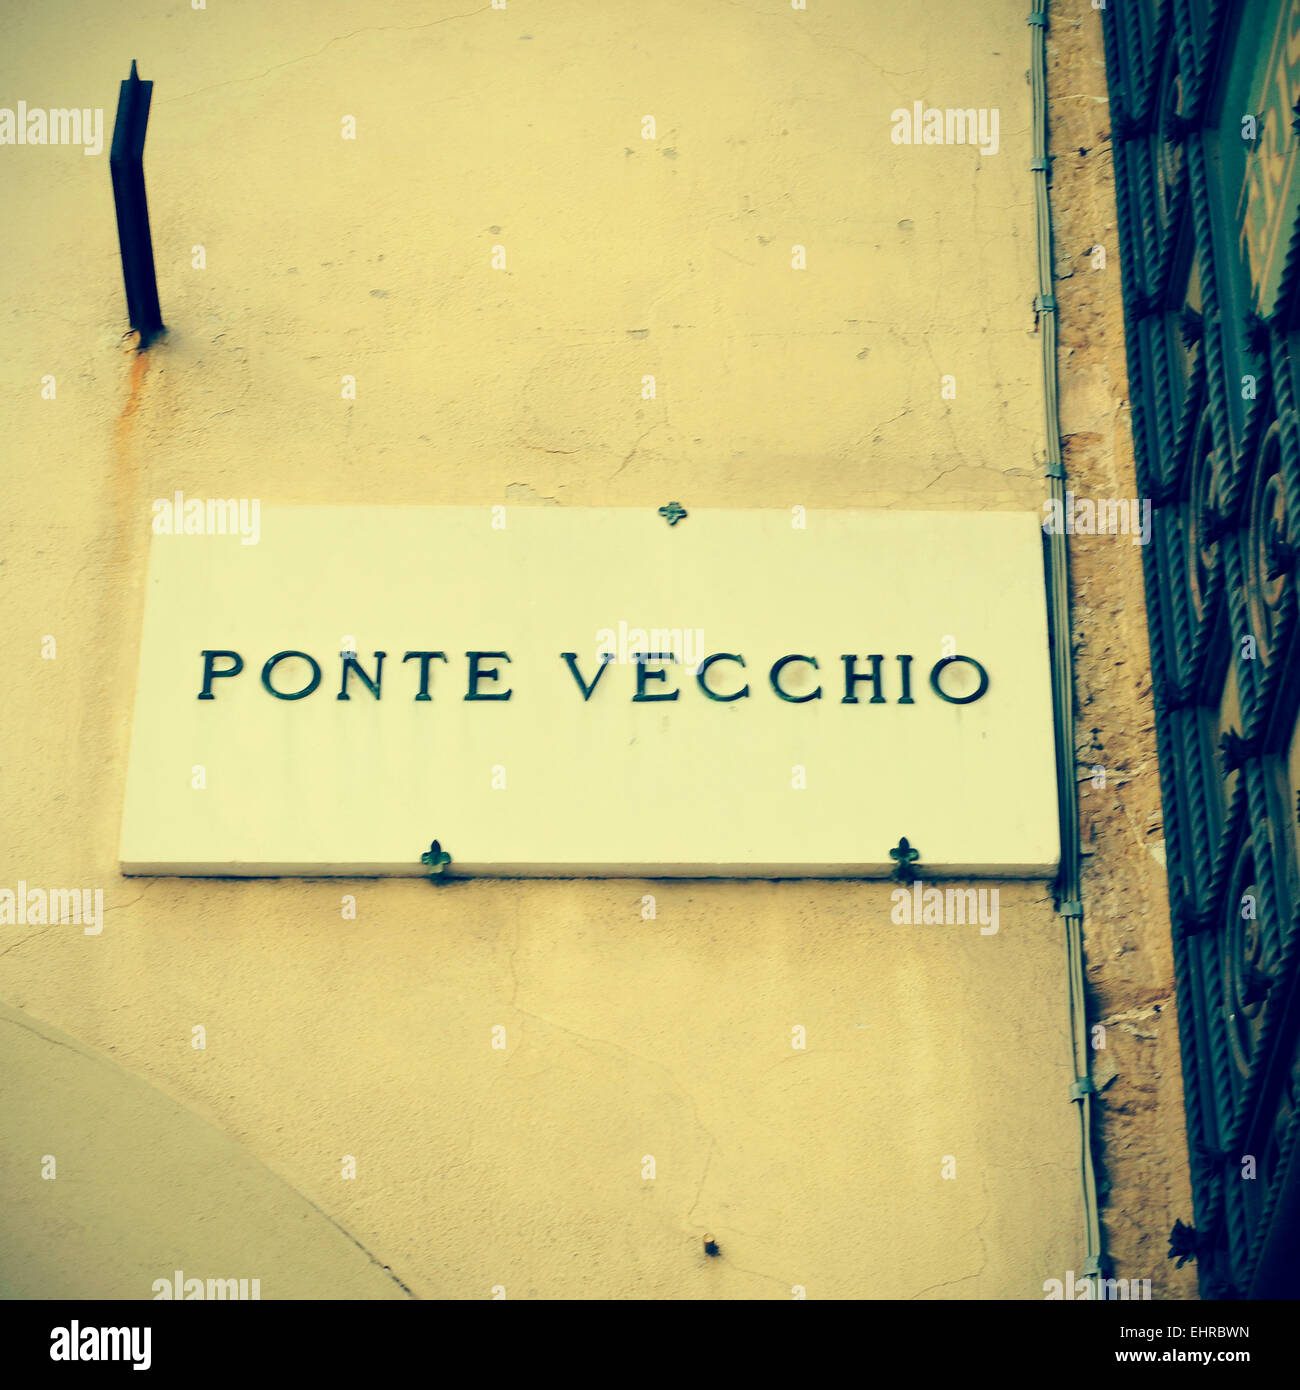 Immagine di una lapide in marmo con il nome di Ponte Vecchio scritto in esso a Firenze, Italia, con un effetto retrò Foto Stock